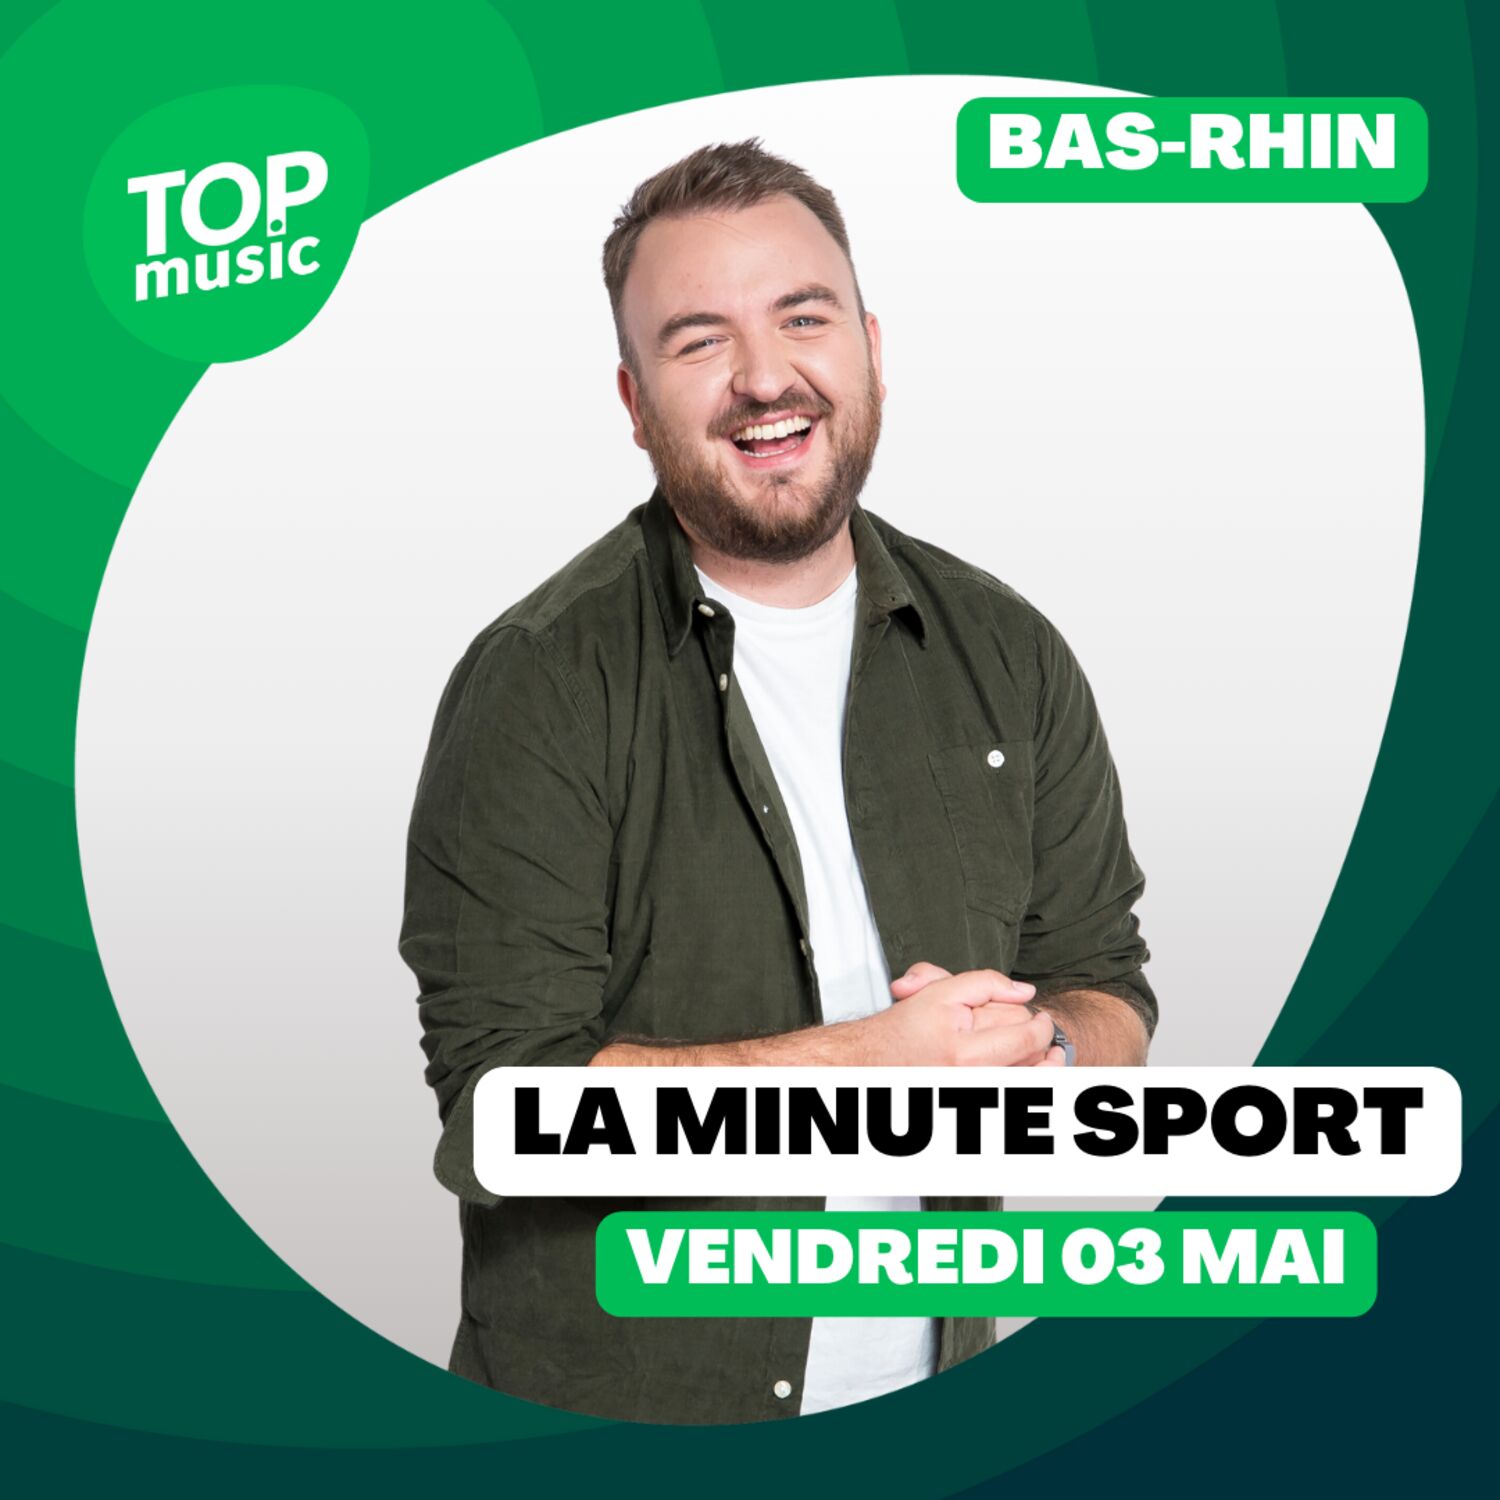 La Minute sport du Bas-Rhin - vendredi 03 mai